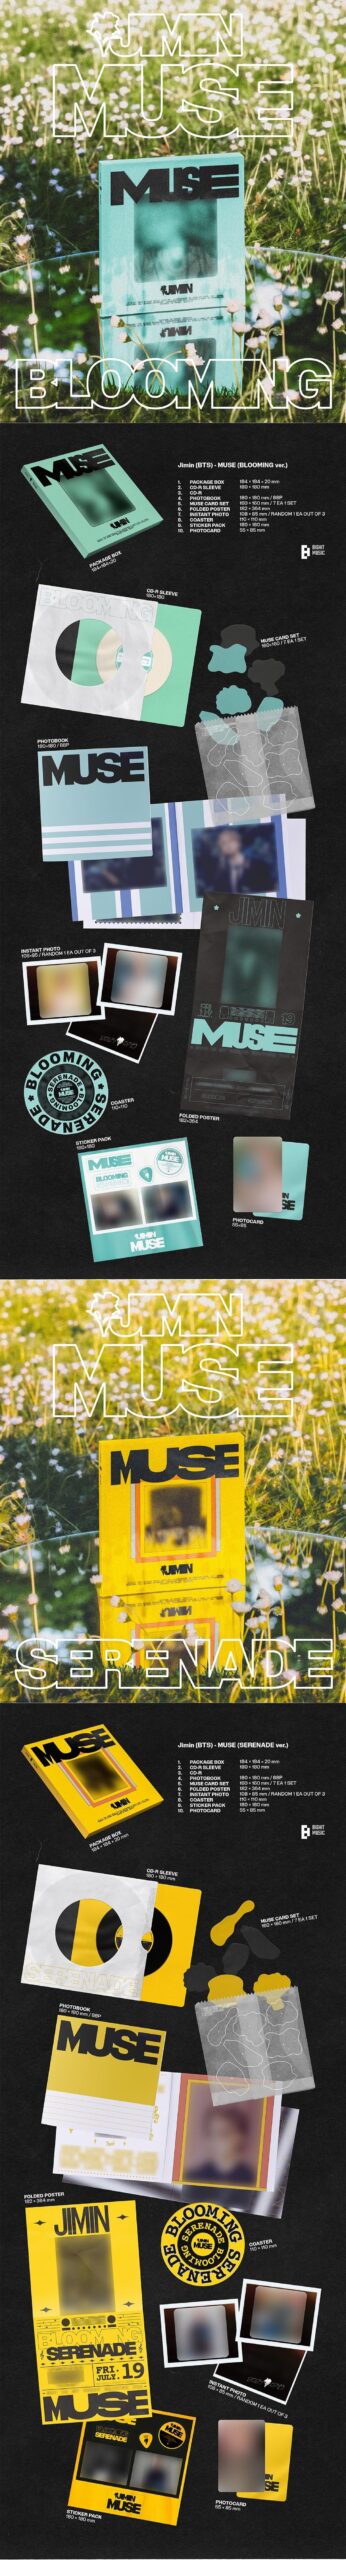 [NOTICE] Jimin’s Second Solo Album, “MUSE” Pre-order info - 180624